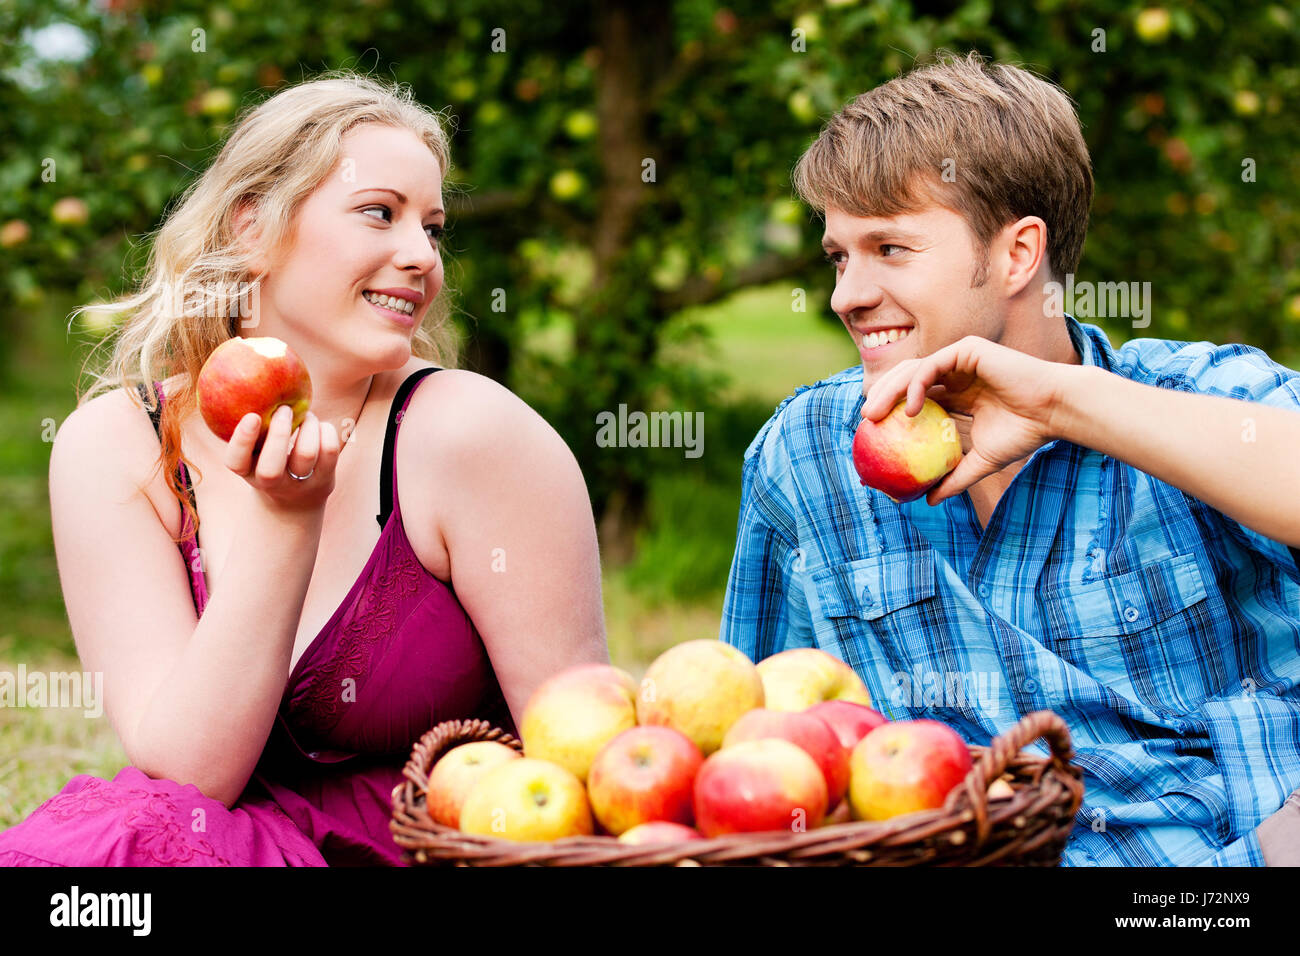 Съем яблок. Мужчина и женщина с яблоком. Фотосессия пара с яблоком. Фотосессия пары в яблоках. Парень и девушка с яблоками.